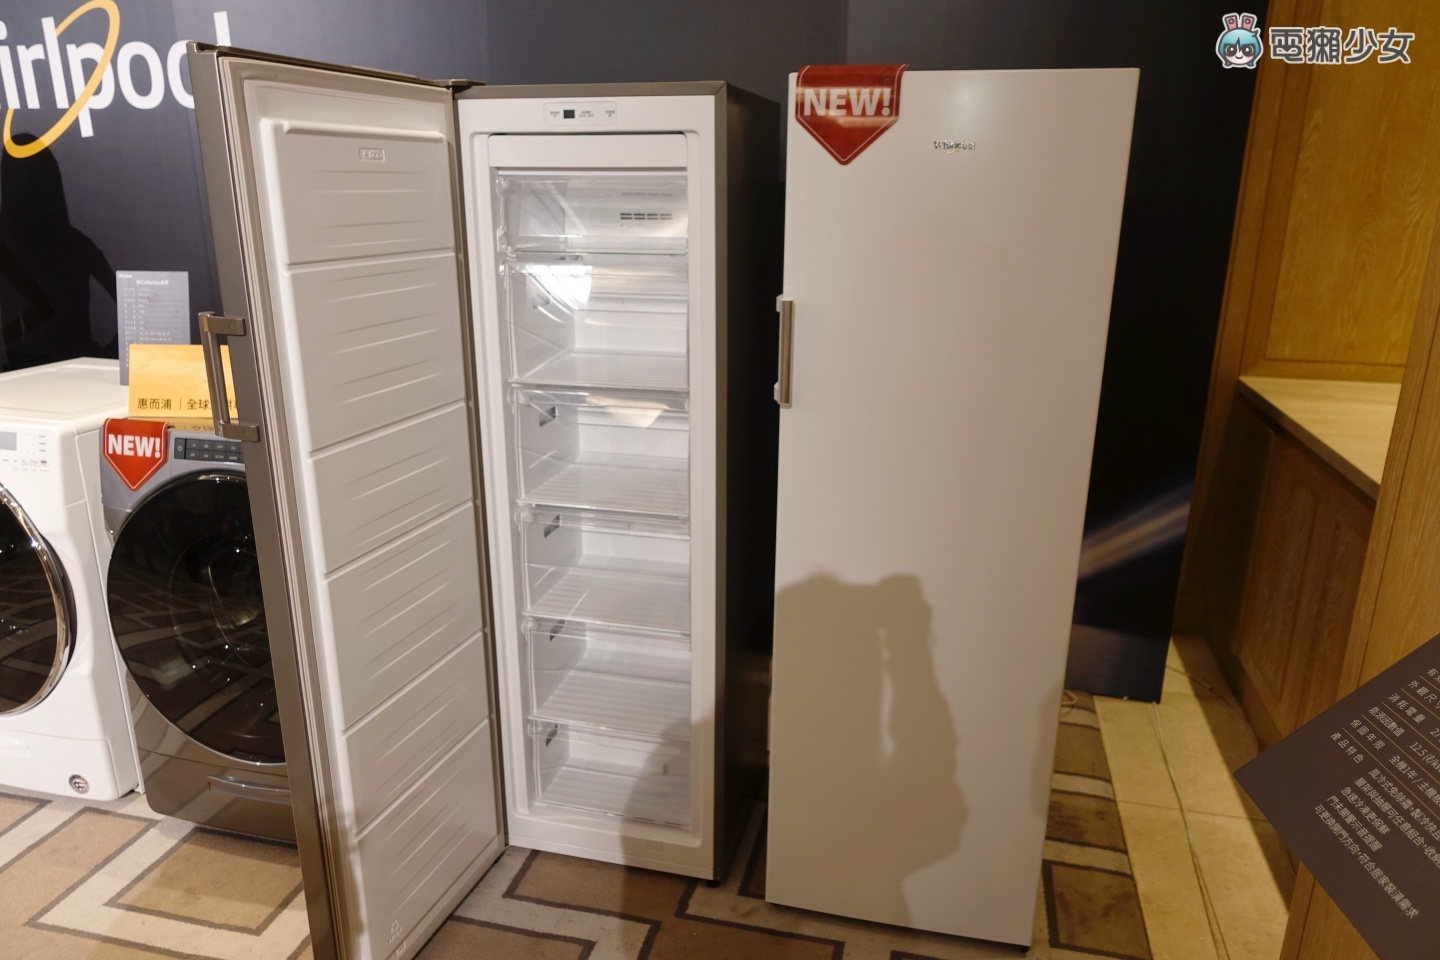 出門｜惠而浦 2022 年全系列智能科技家電登台！推出全新冰箱、洗脫烘衣機等多項產品